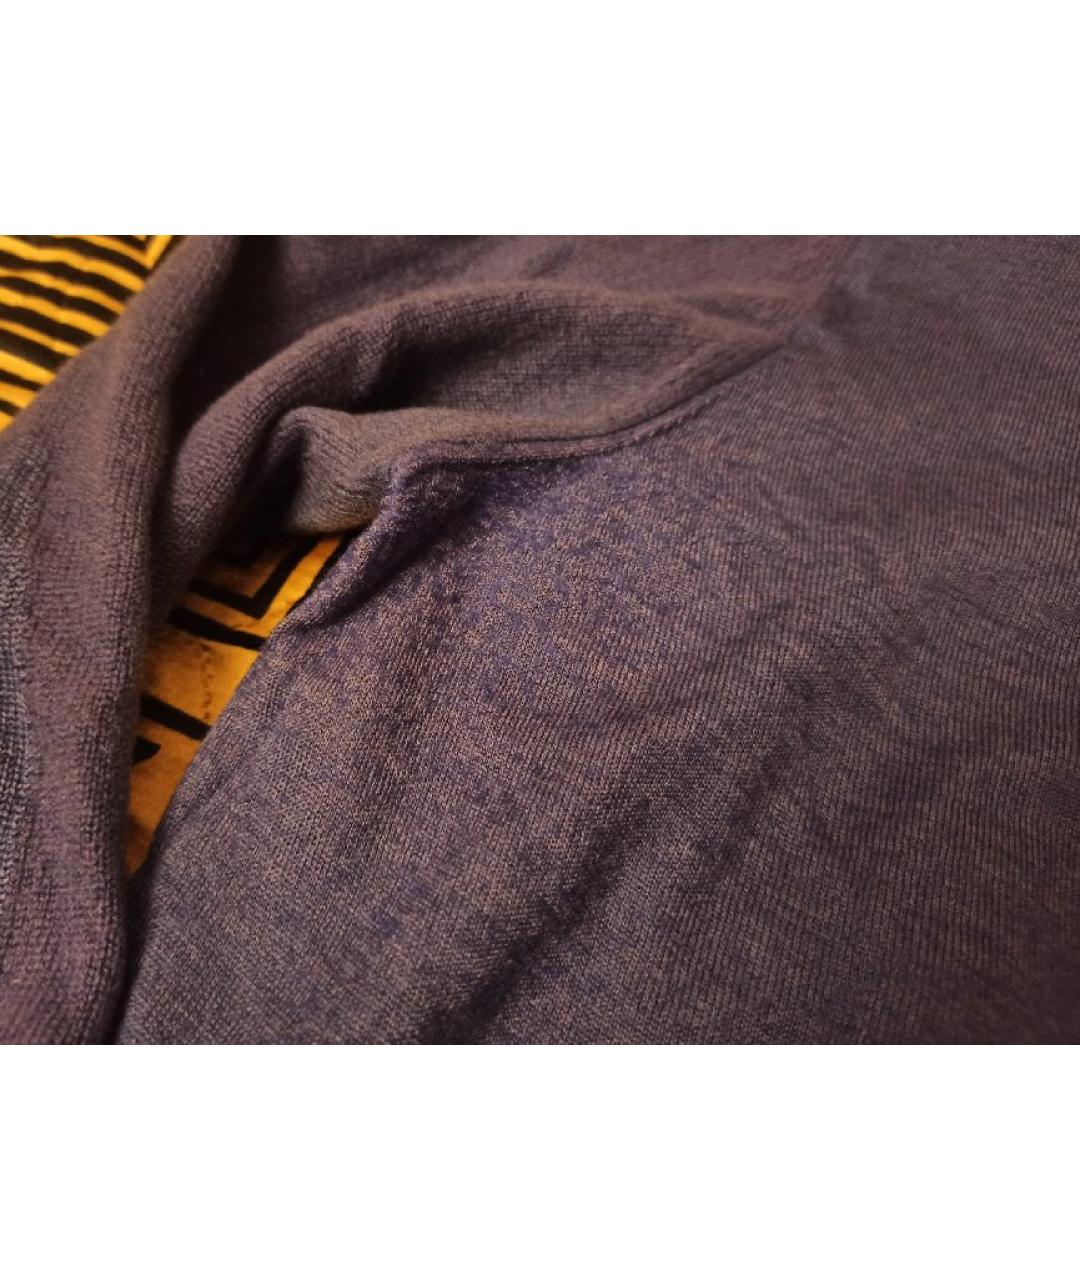 ZILLI Фиолетовый кашемировый джемпер / свитер, фото 5